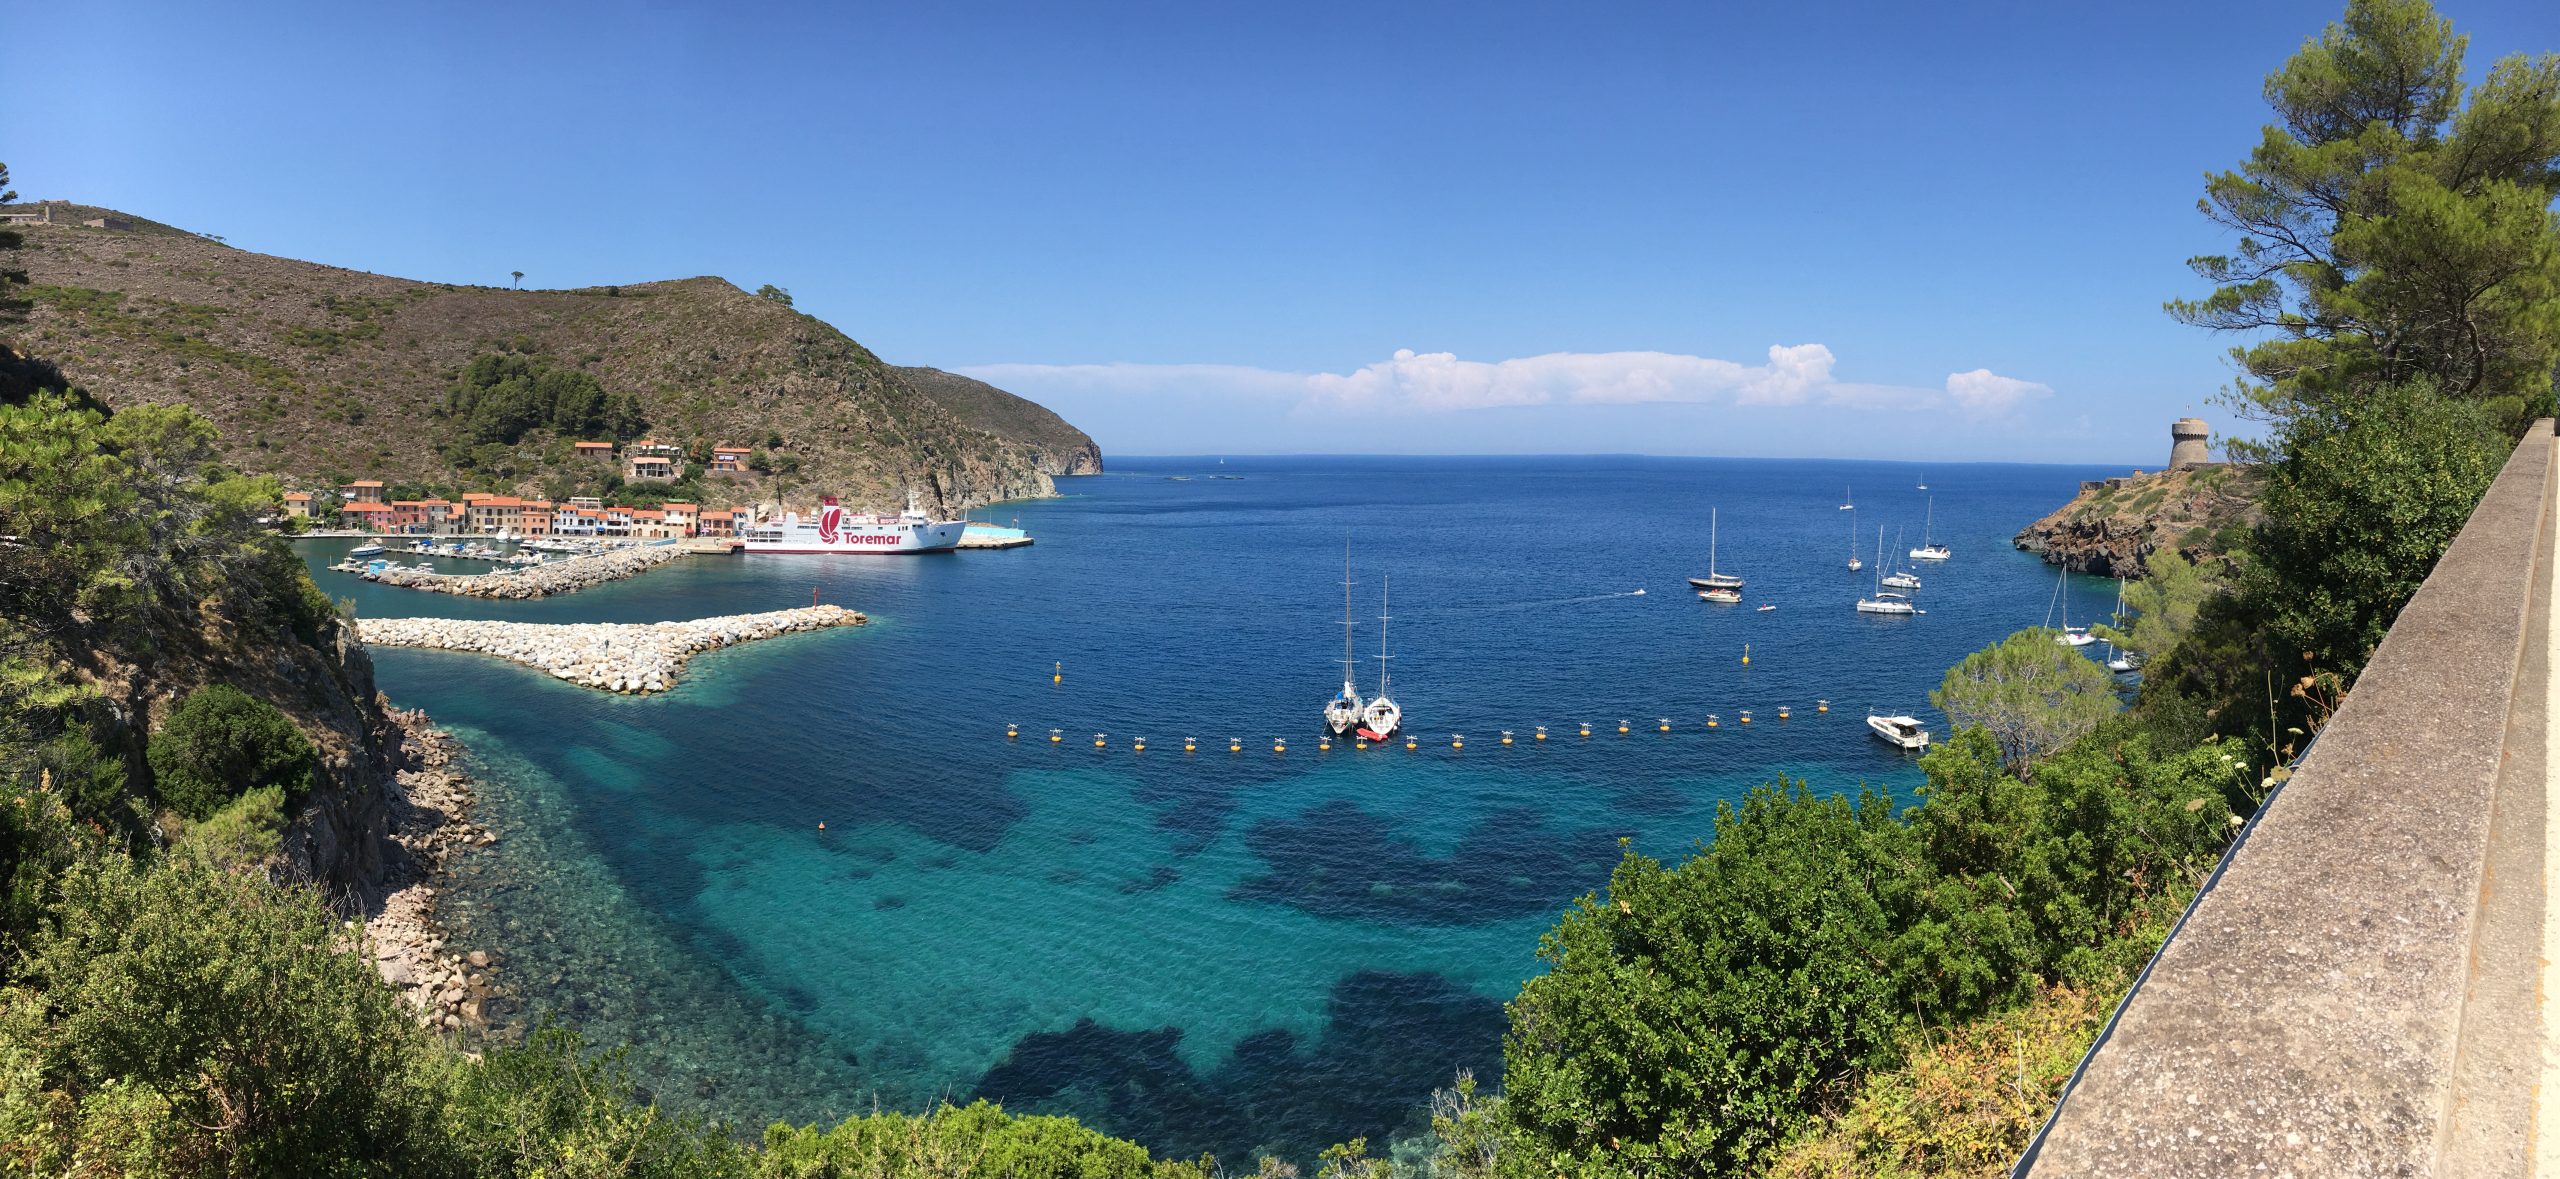 Una crociera subacquea tra Corsica e Capraia